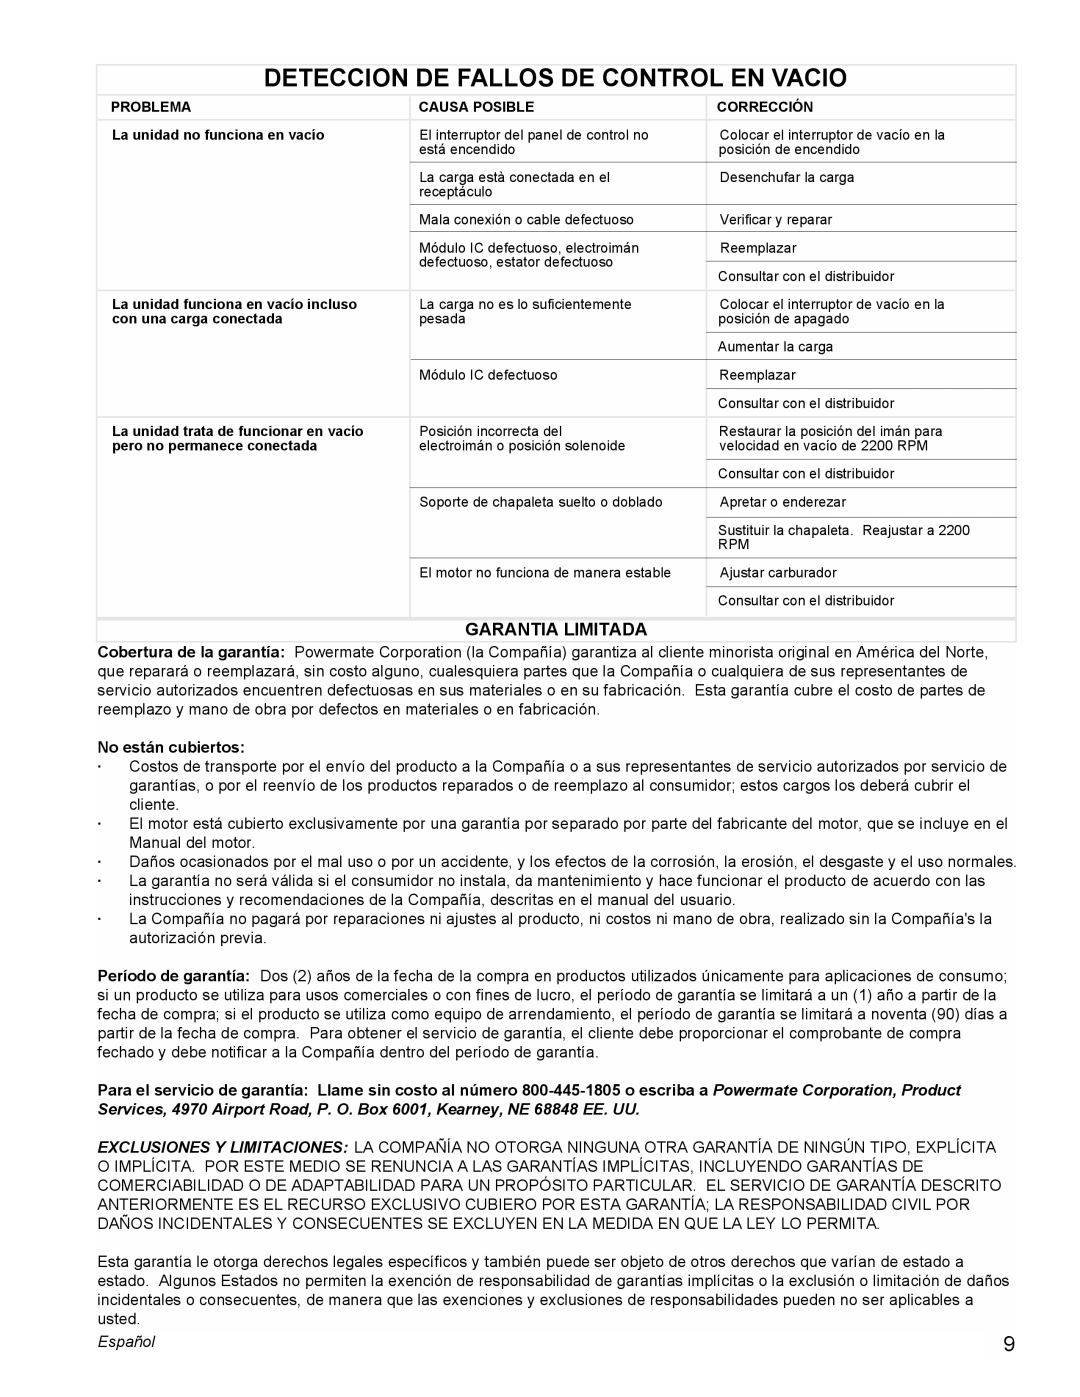 Powermate PMC605000 manual Deteccion De Fallos De Control En Vacio, Garantia Limitada, No están cubiertos, Español 